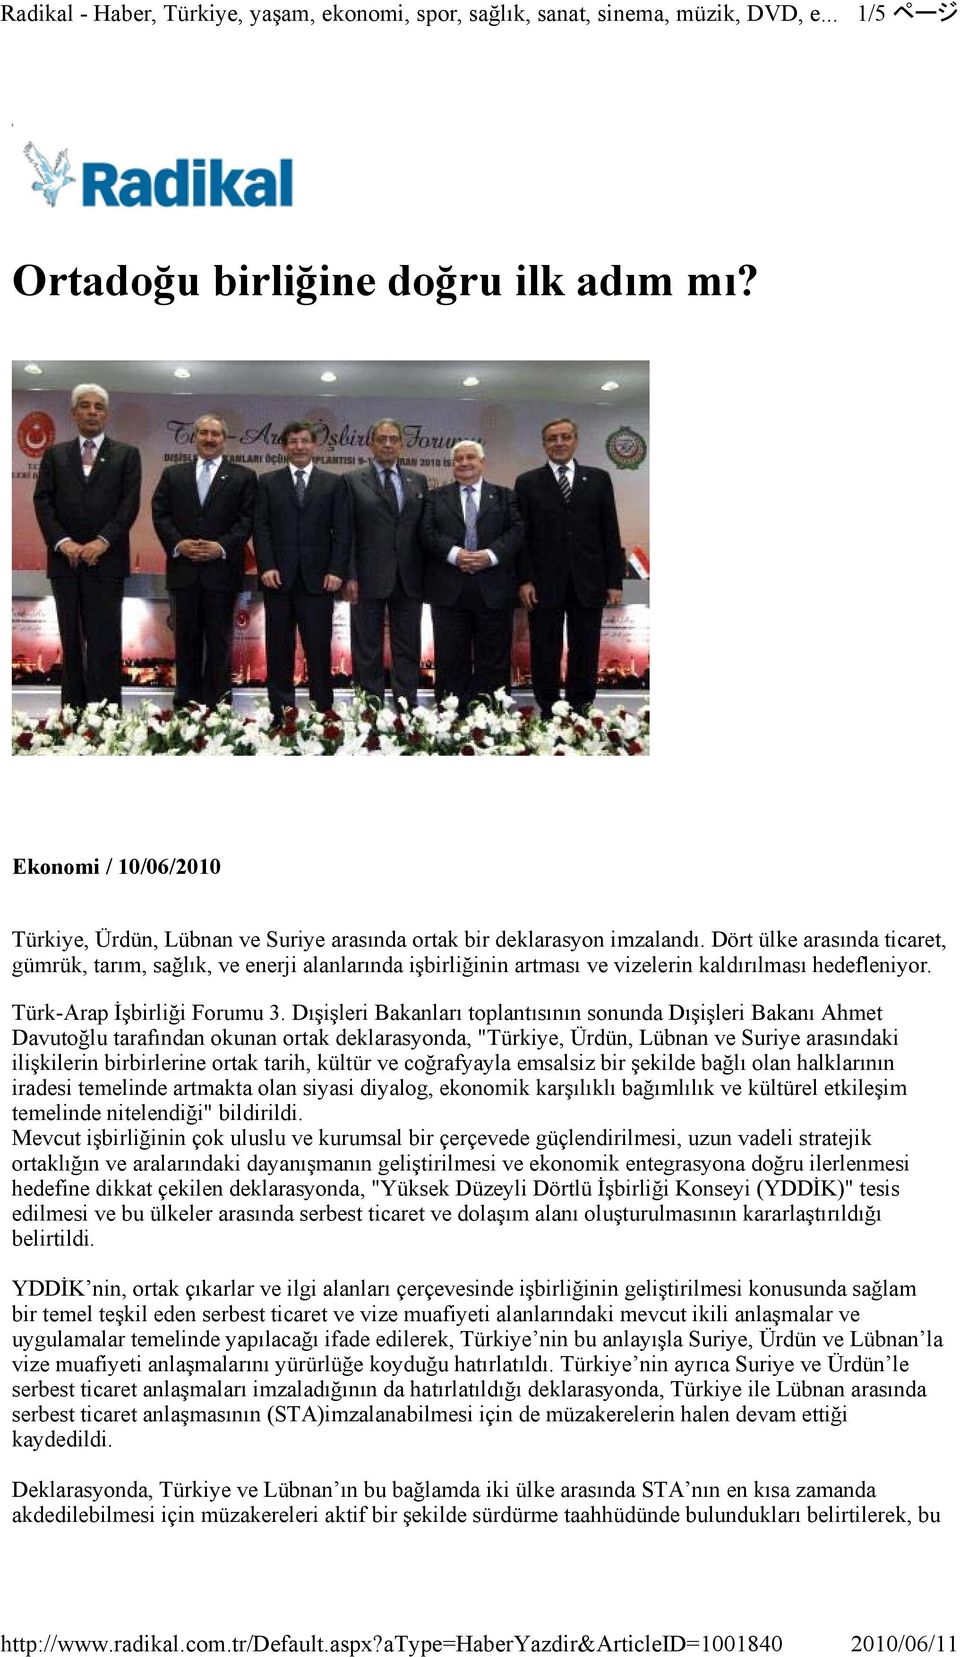 Dışişleri Bakanları toplantısının sonunda Dışişleri Bakanı Ahmet Davutoğlu tarafından okunan ortak deklarasyonda, "Türkiye, Ürdün, Lübnan ve Suriye arasındaki ilişkilerin birbirlerine ortak tarih,